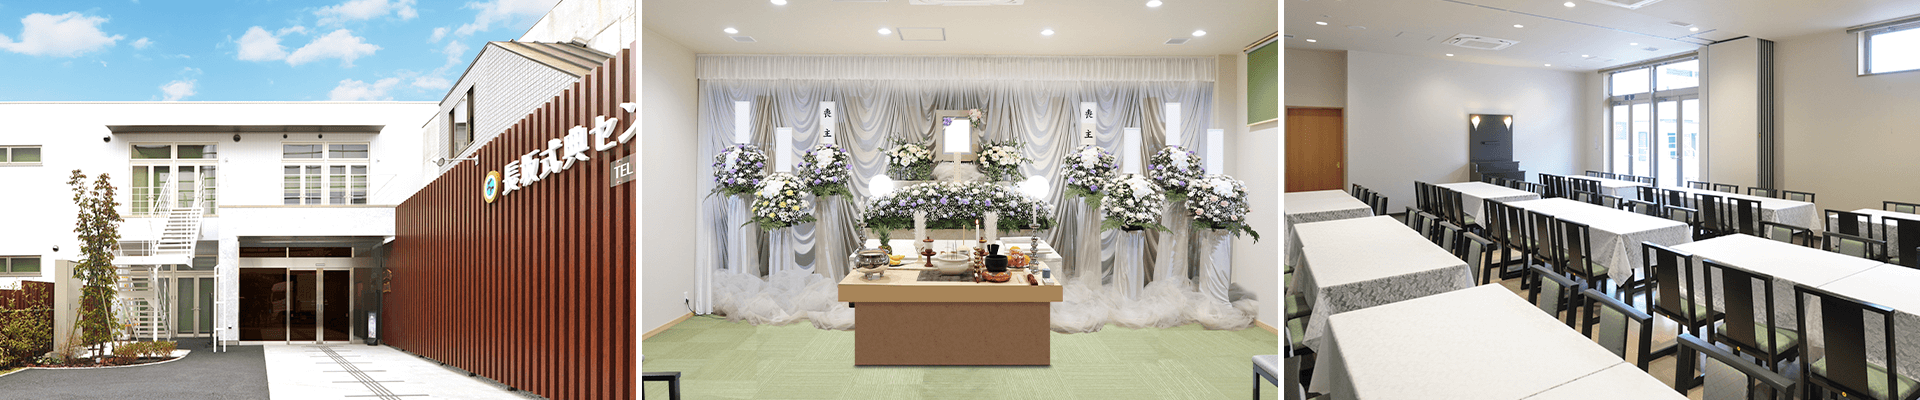 葬儀・葬式・家族葬なら16.5万円からできる長坂式典センター 所沢市の葬儀場一覧